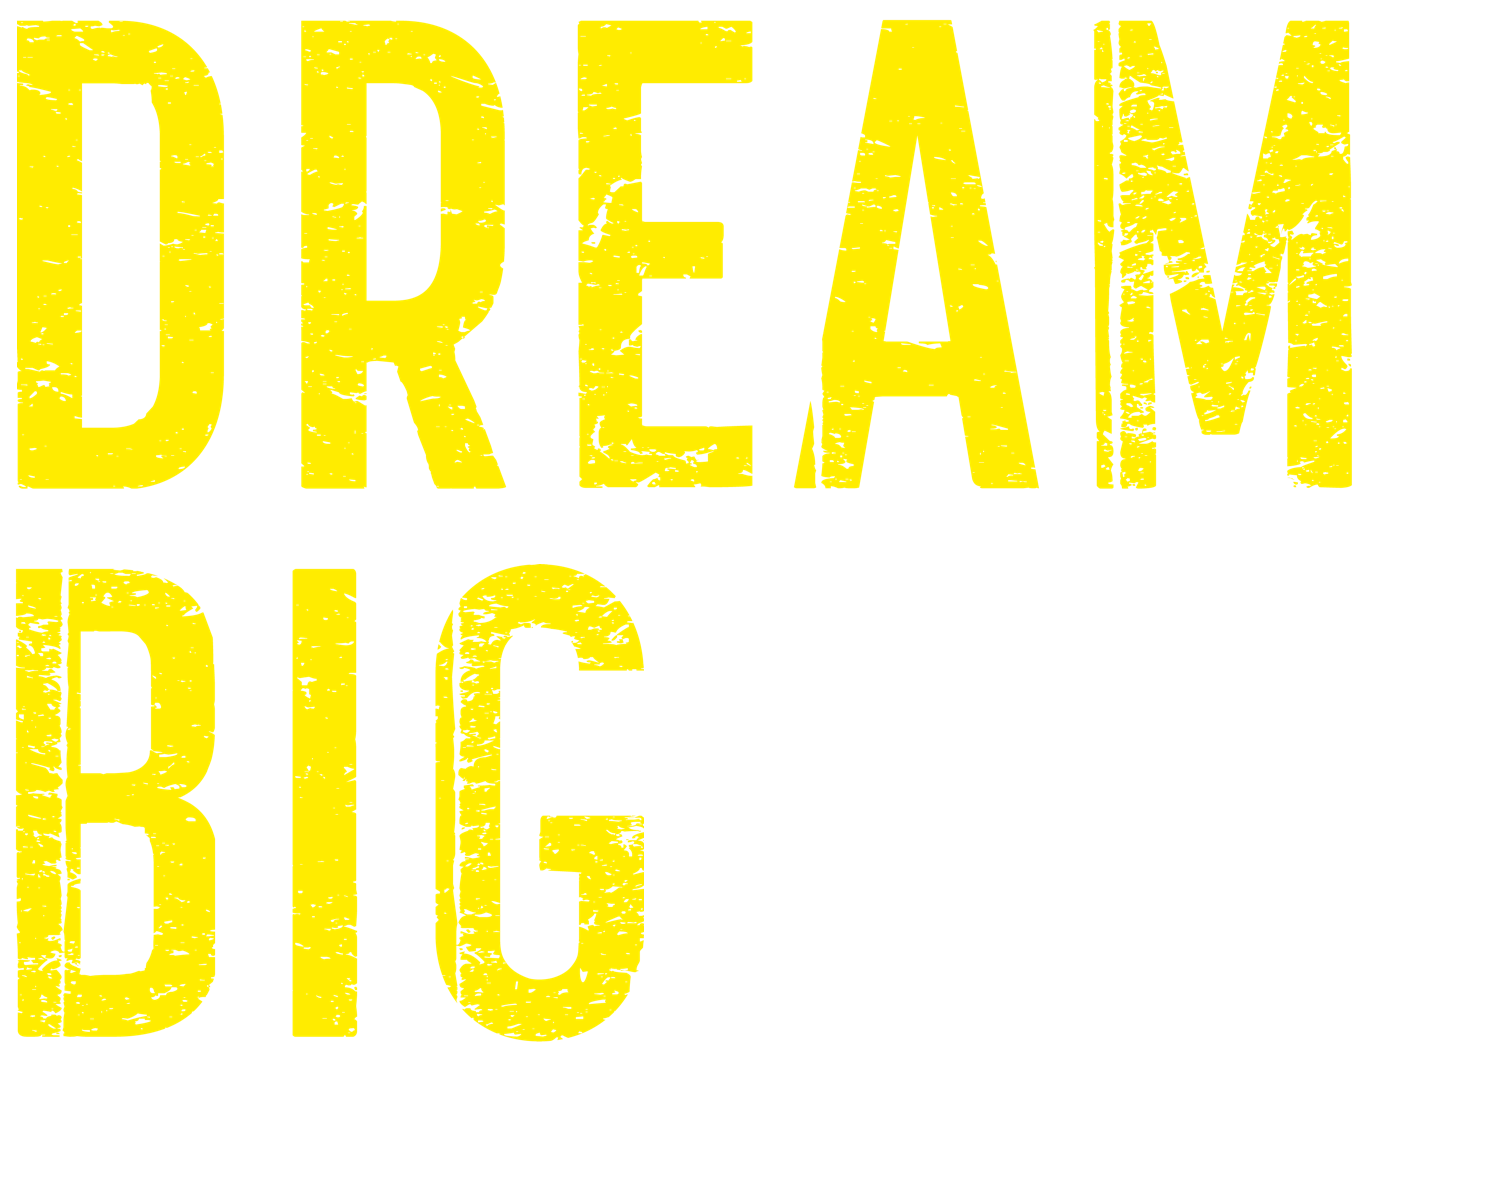 Dream Big Logo